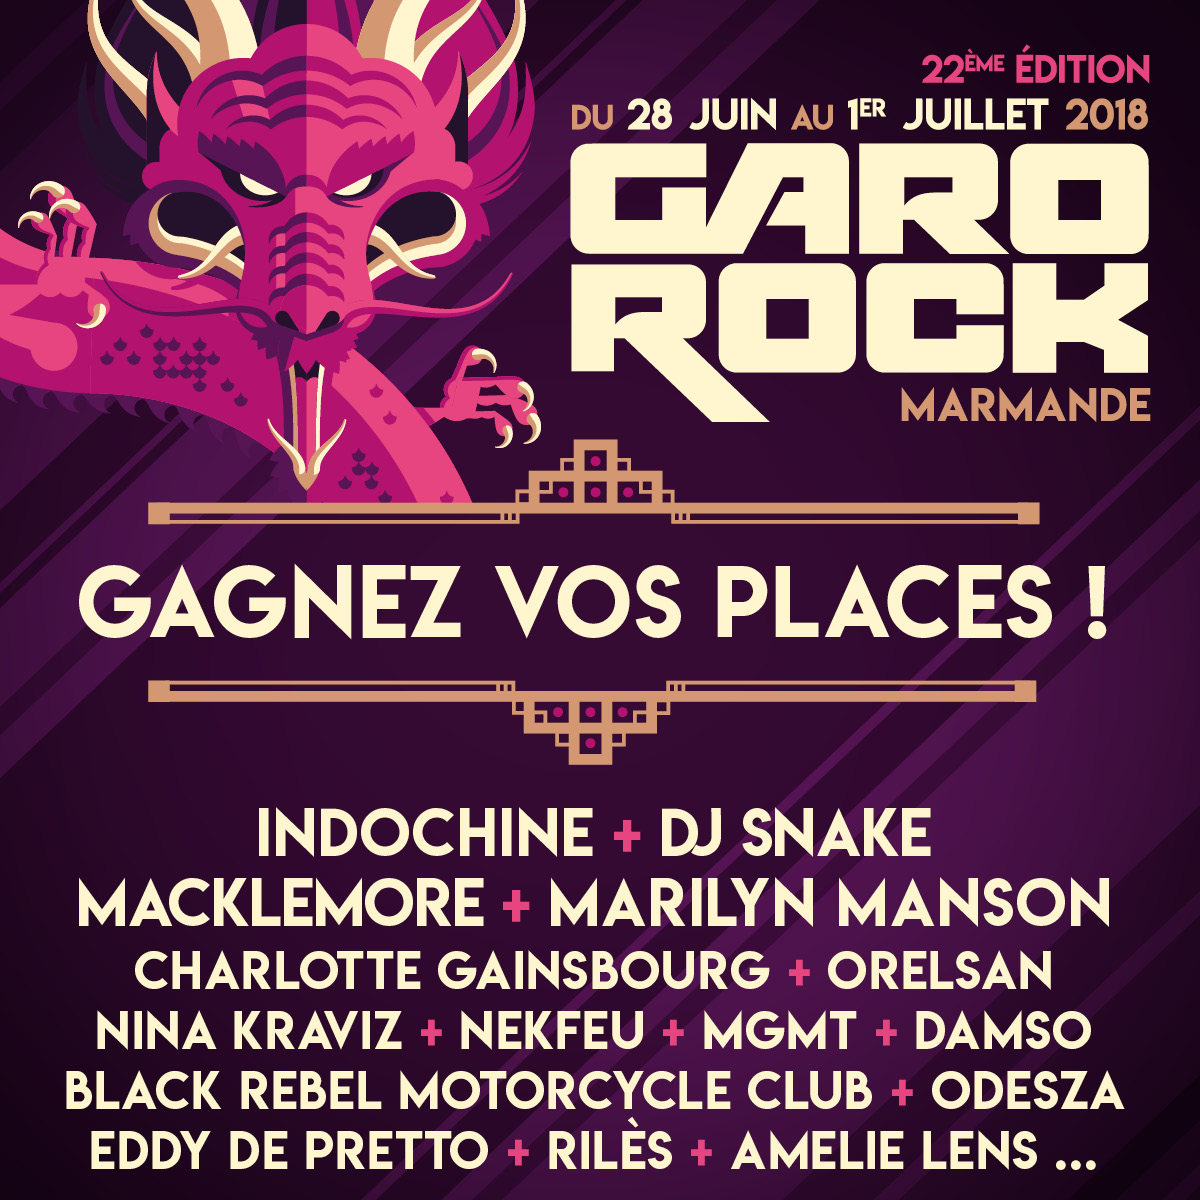 Festival Garorock #22